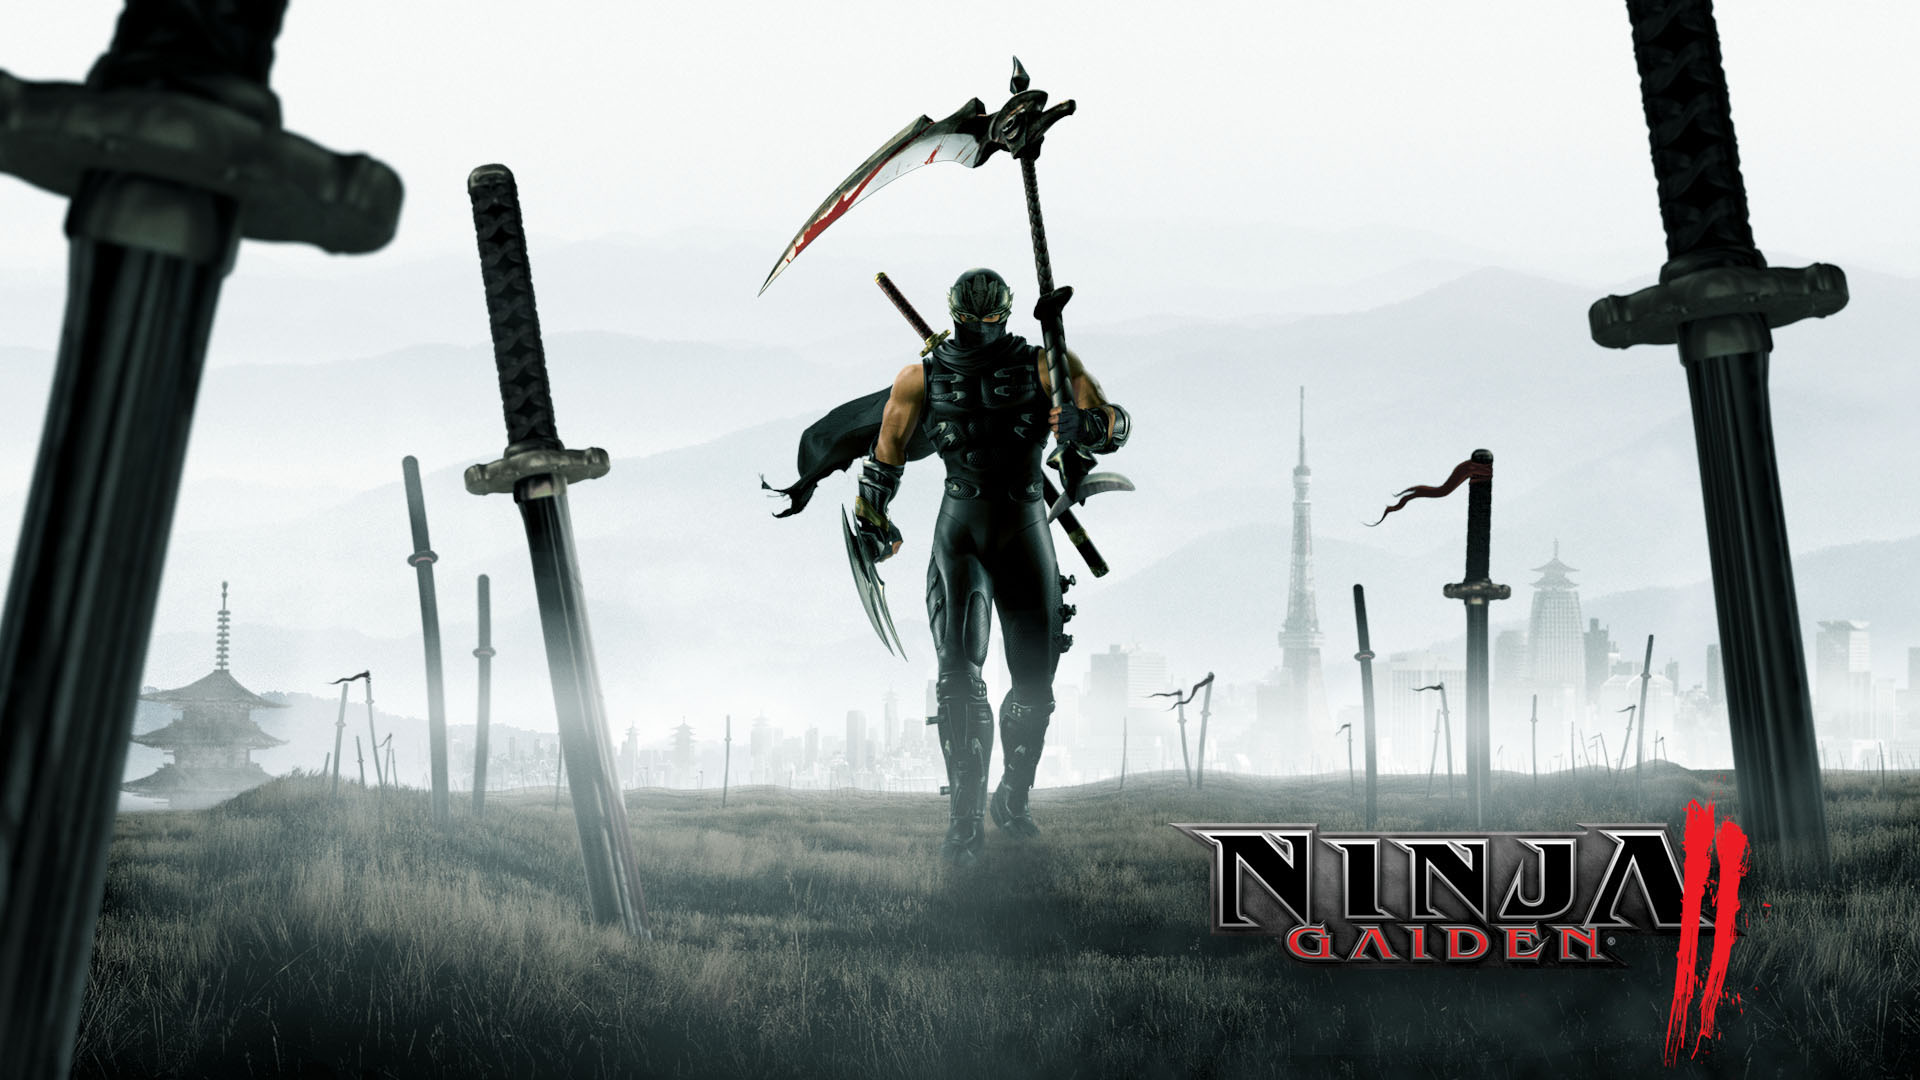 Video Game Ninja Gaiden II HD Wallpaper | Background Image